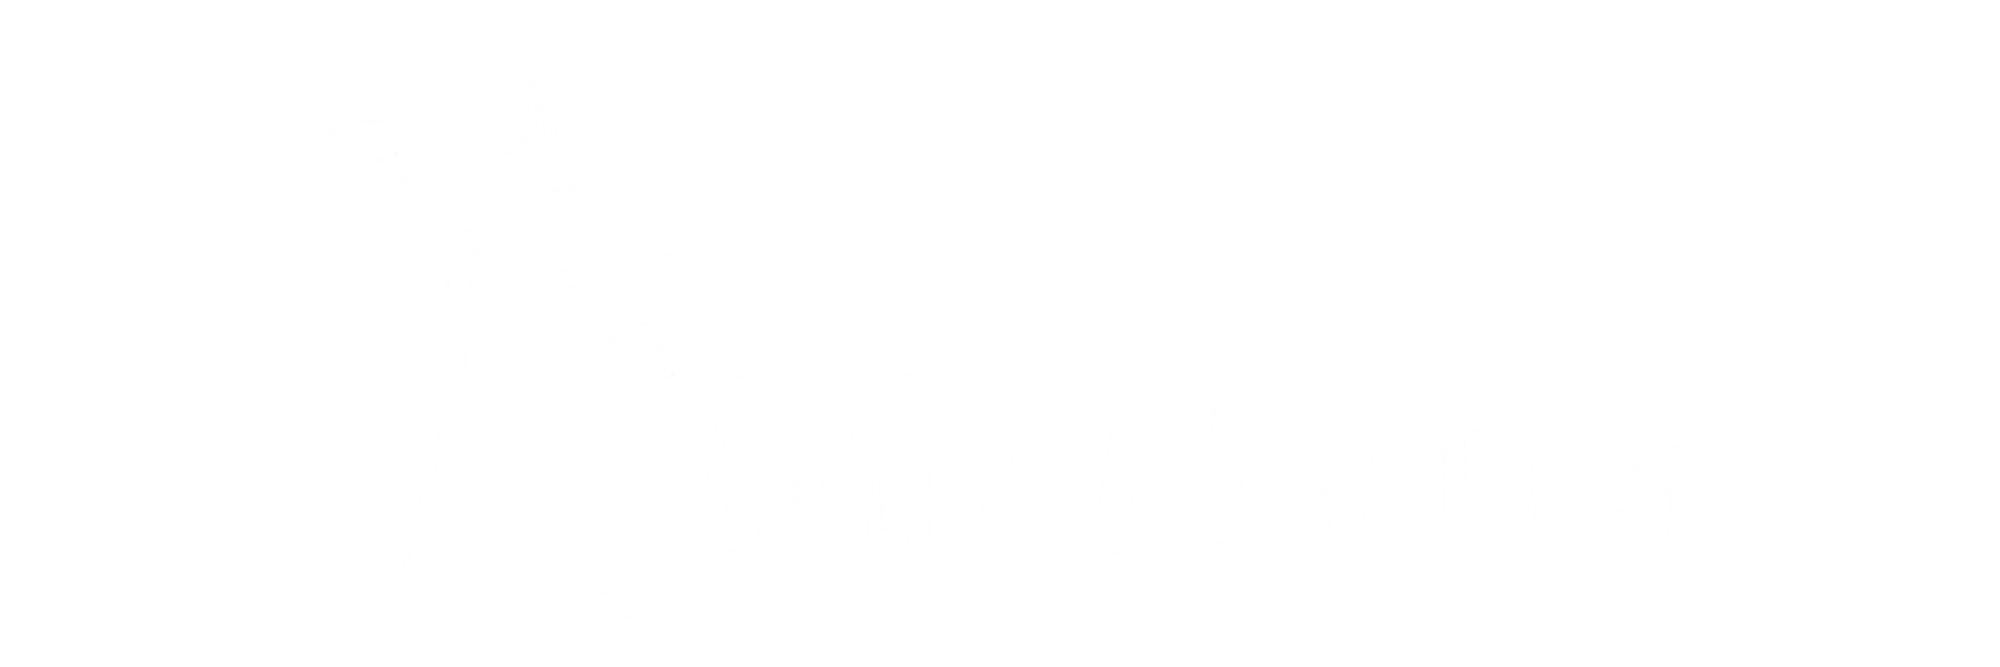 Blind Man Dan